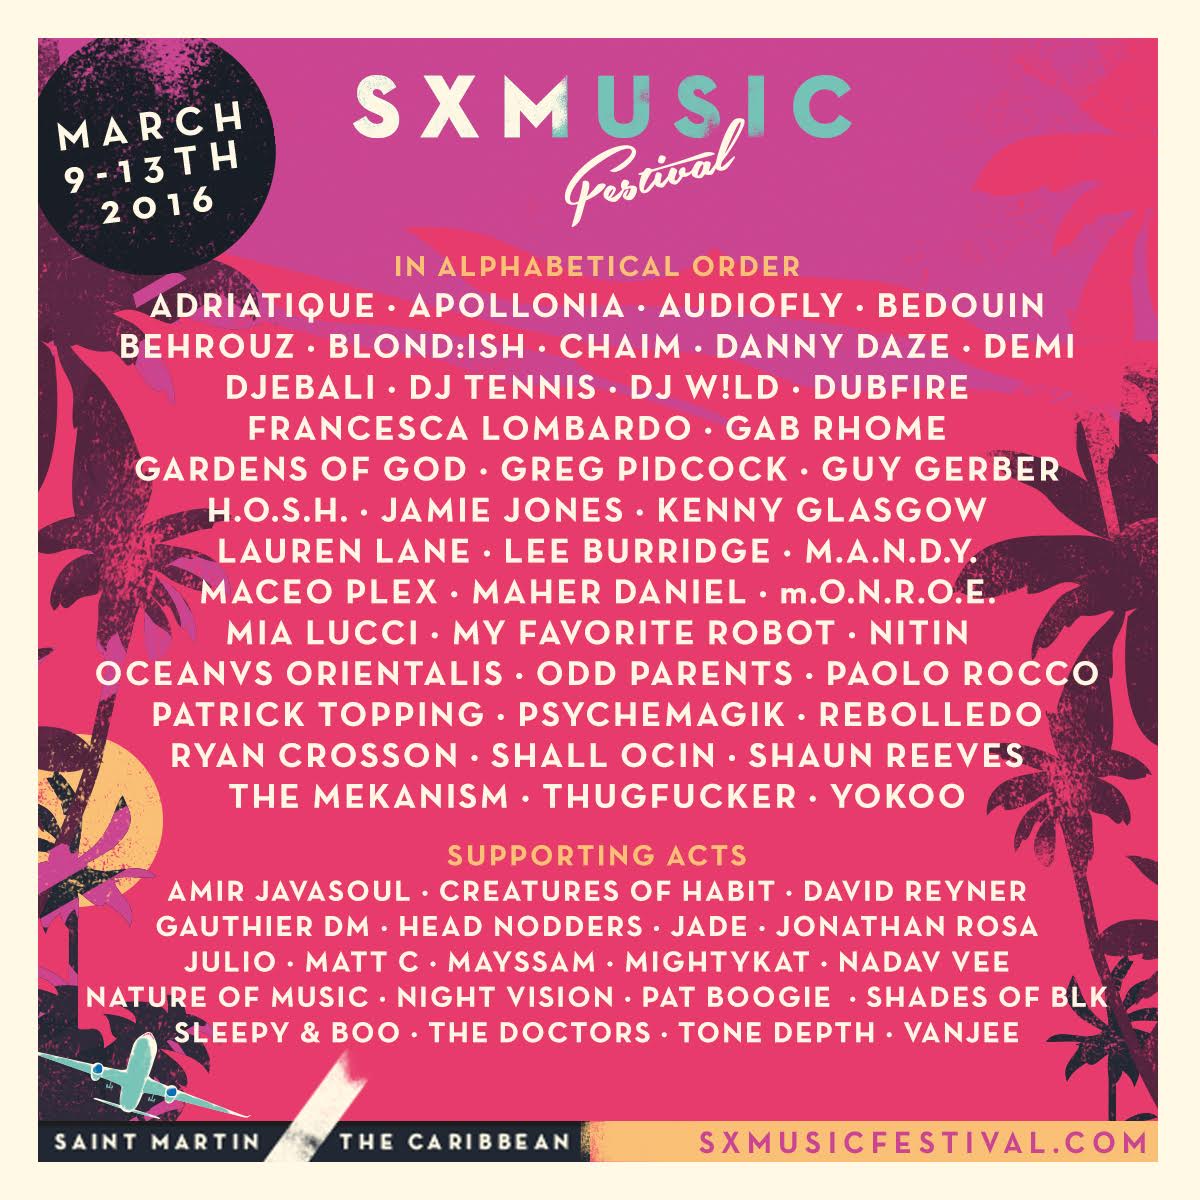 sxmusic festival-full lineup